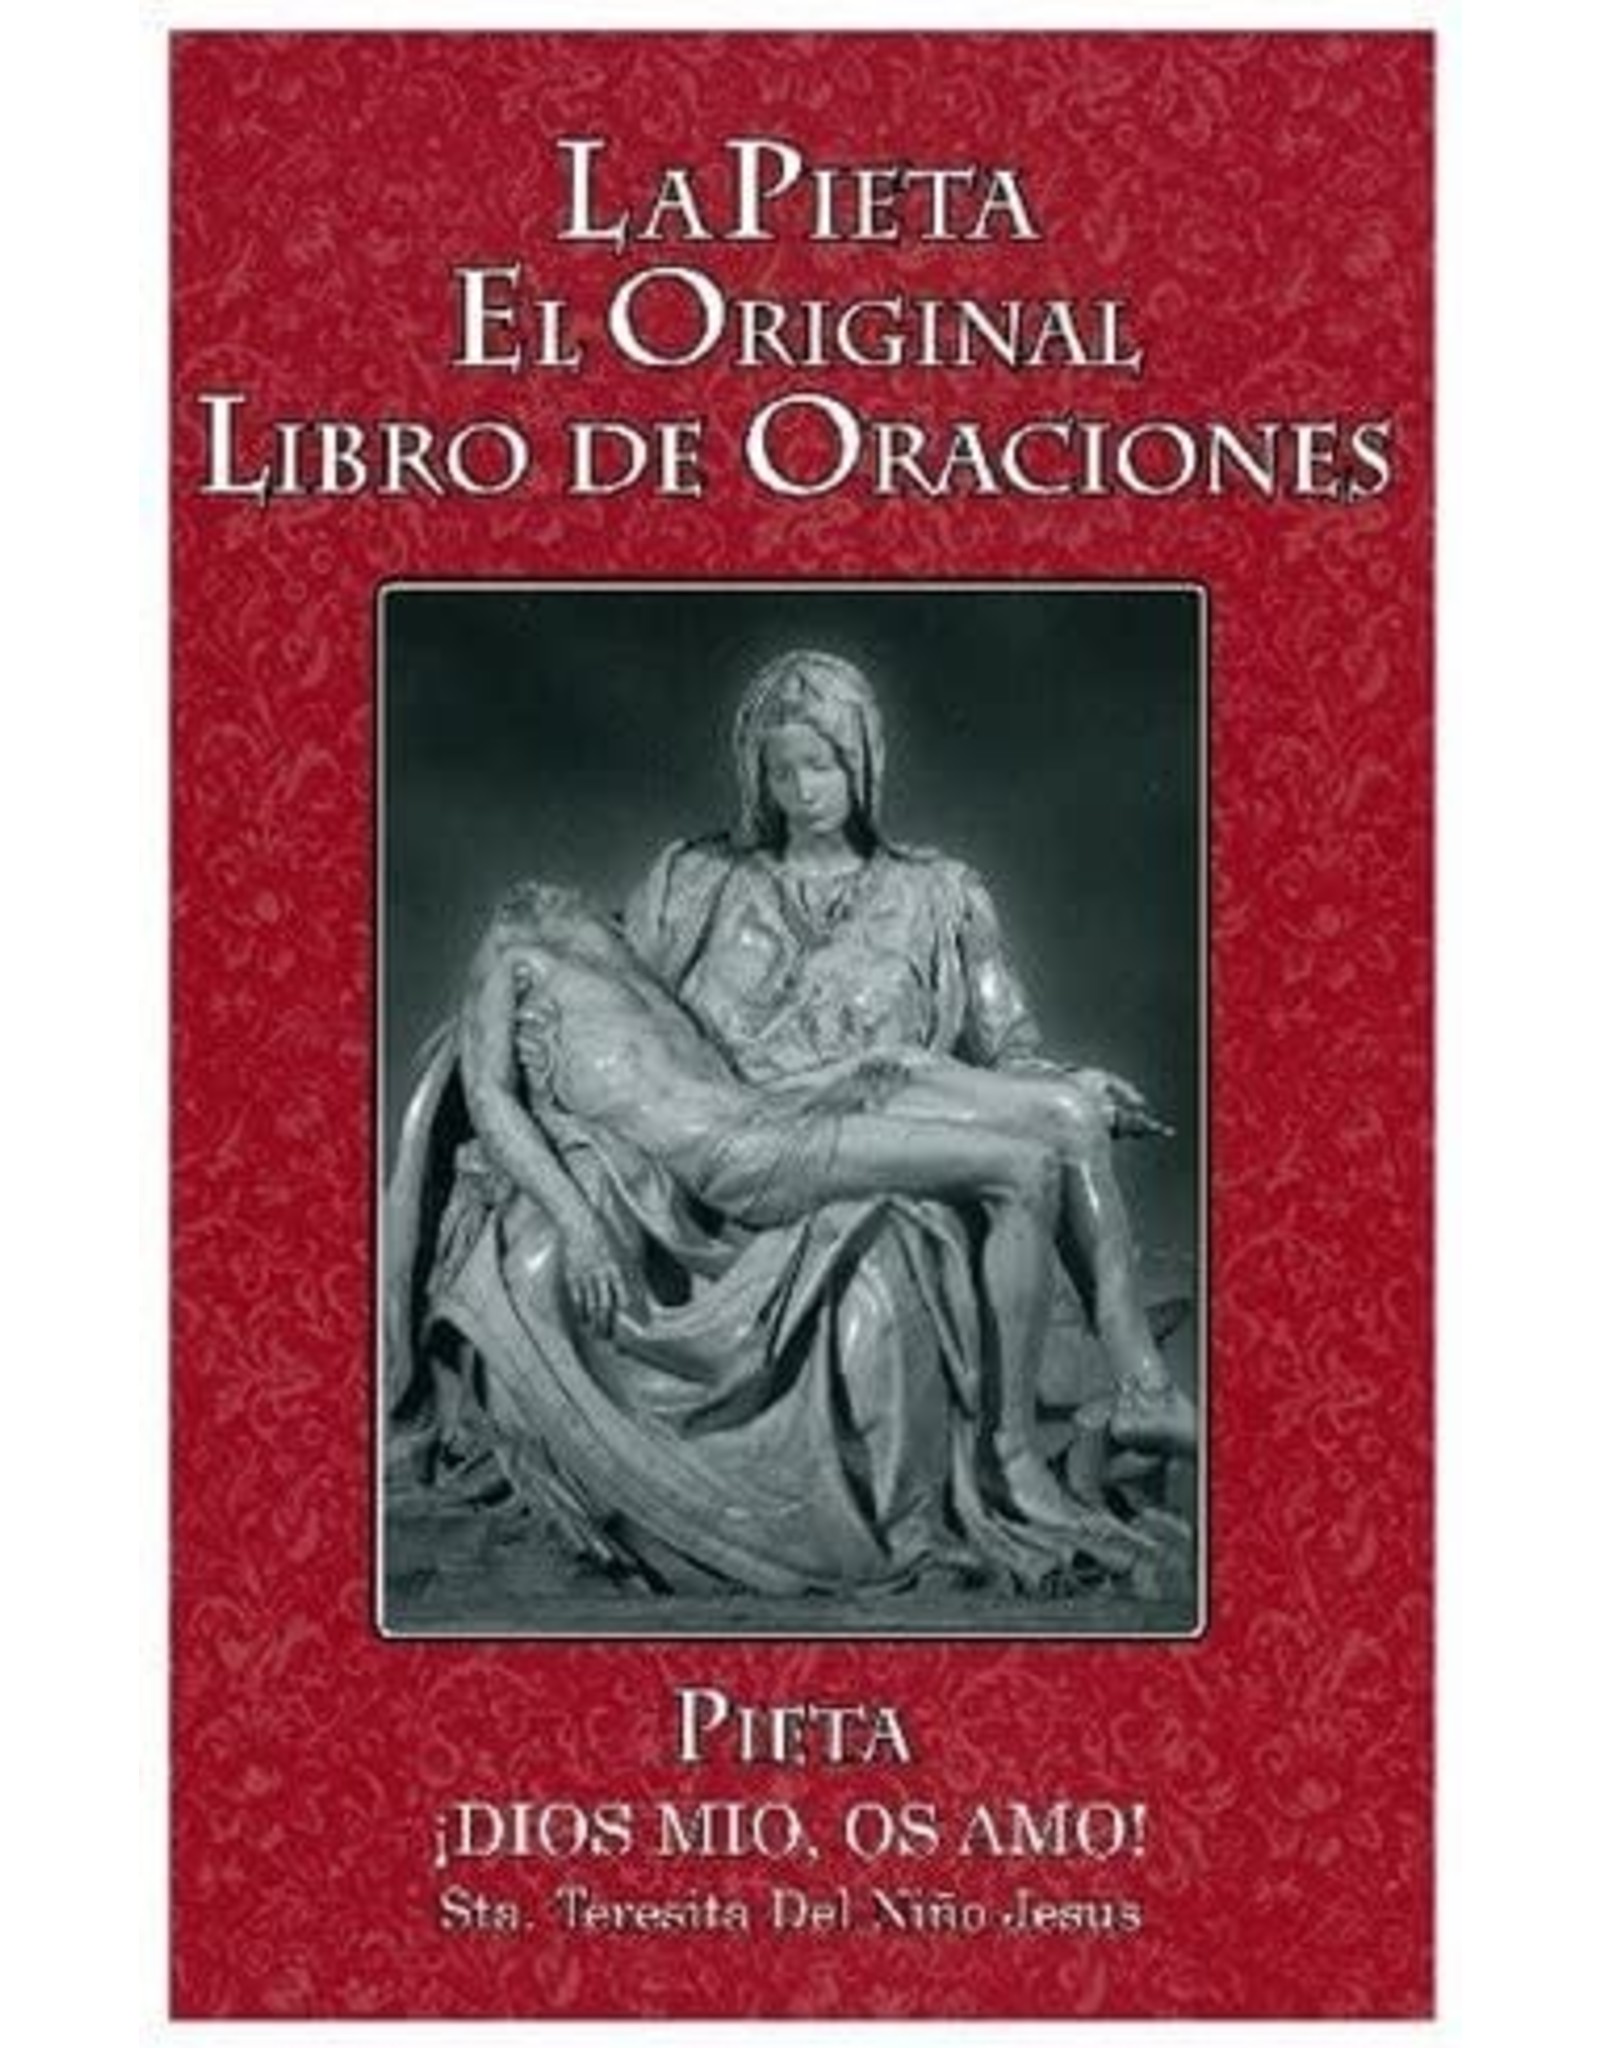 La Pieta, El Original Libra de Oraciones - Large Print